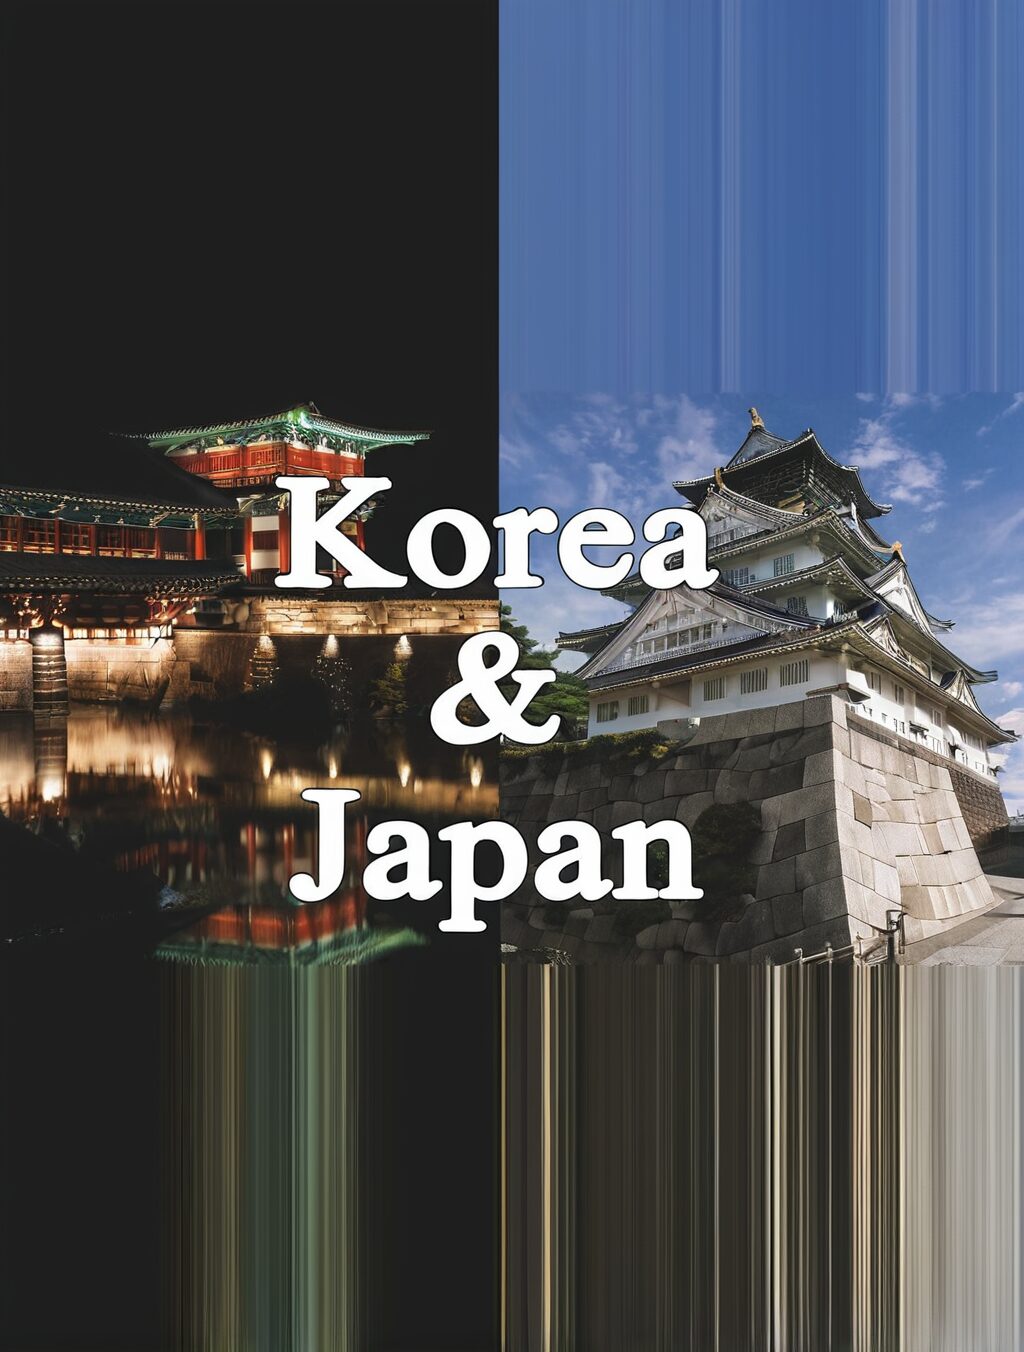 south korea and japan trip reddit